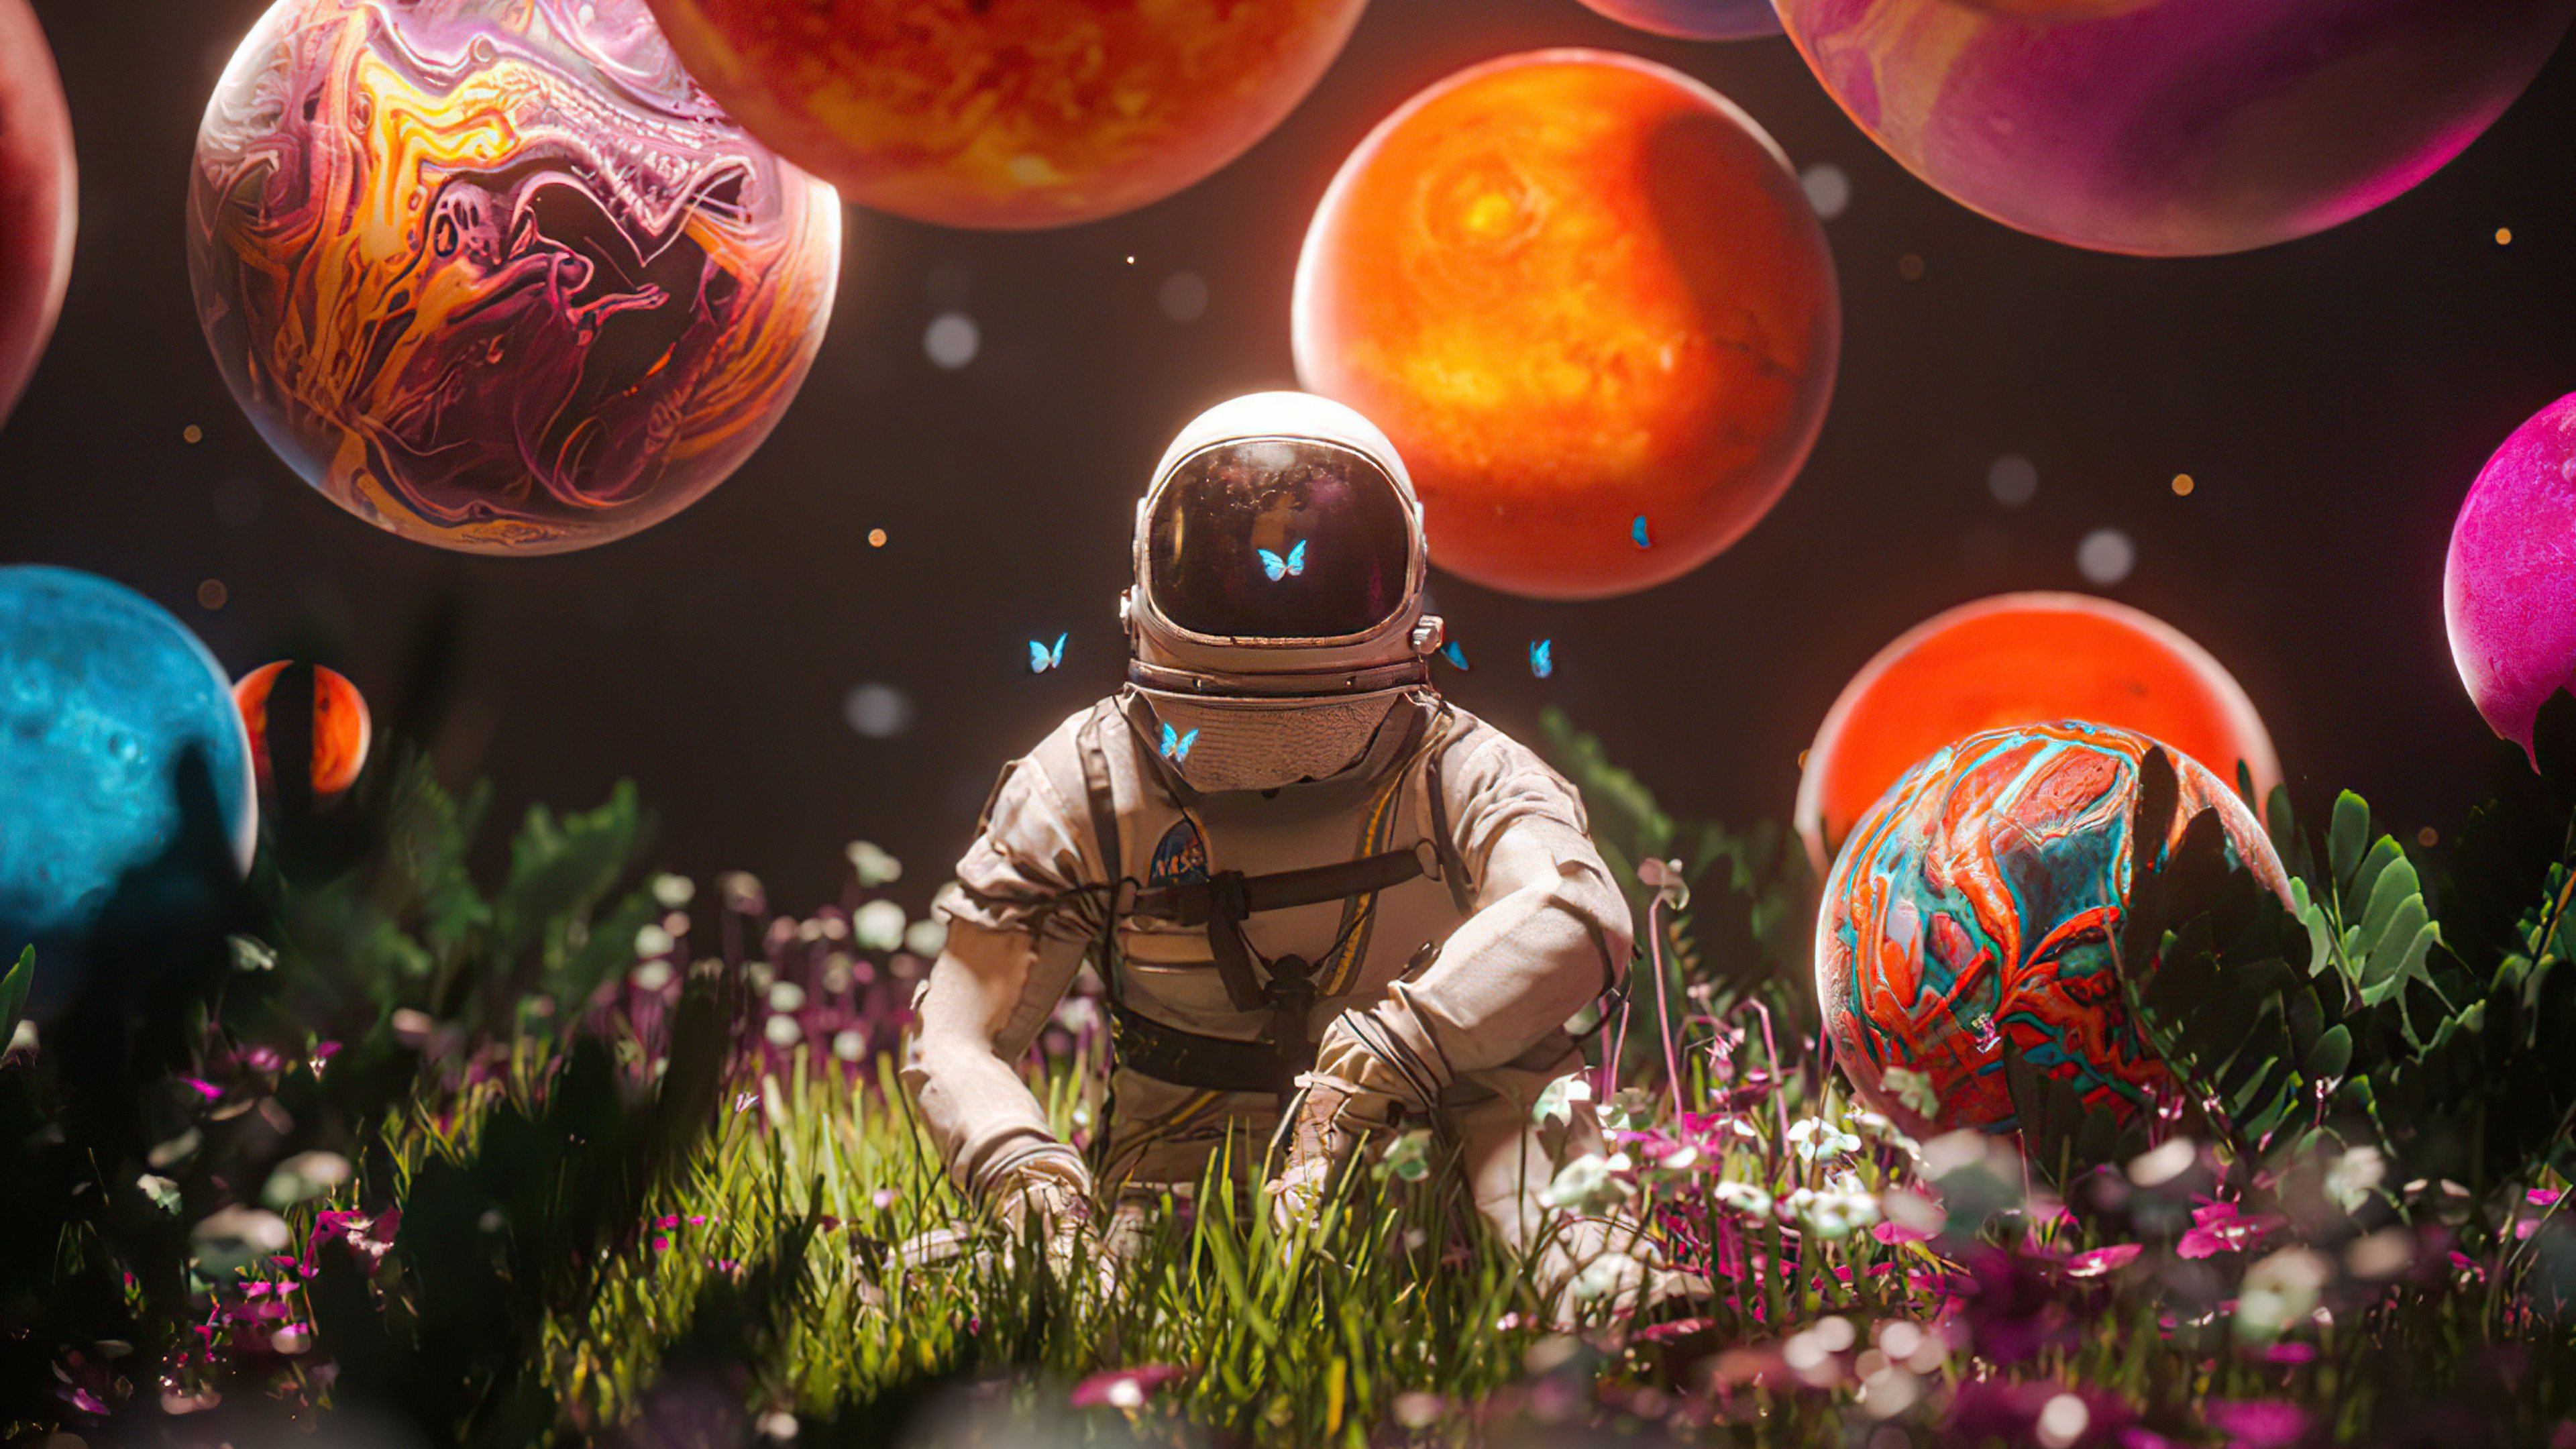 Fondos de pantalla Astronauta con planetas y flores